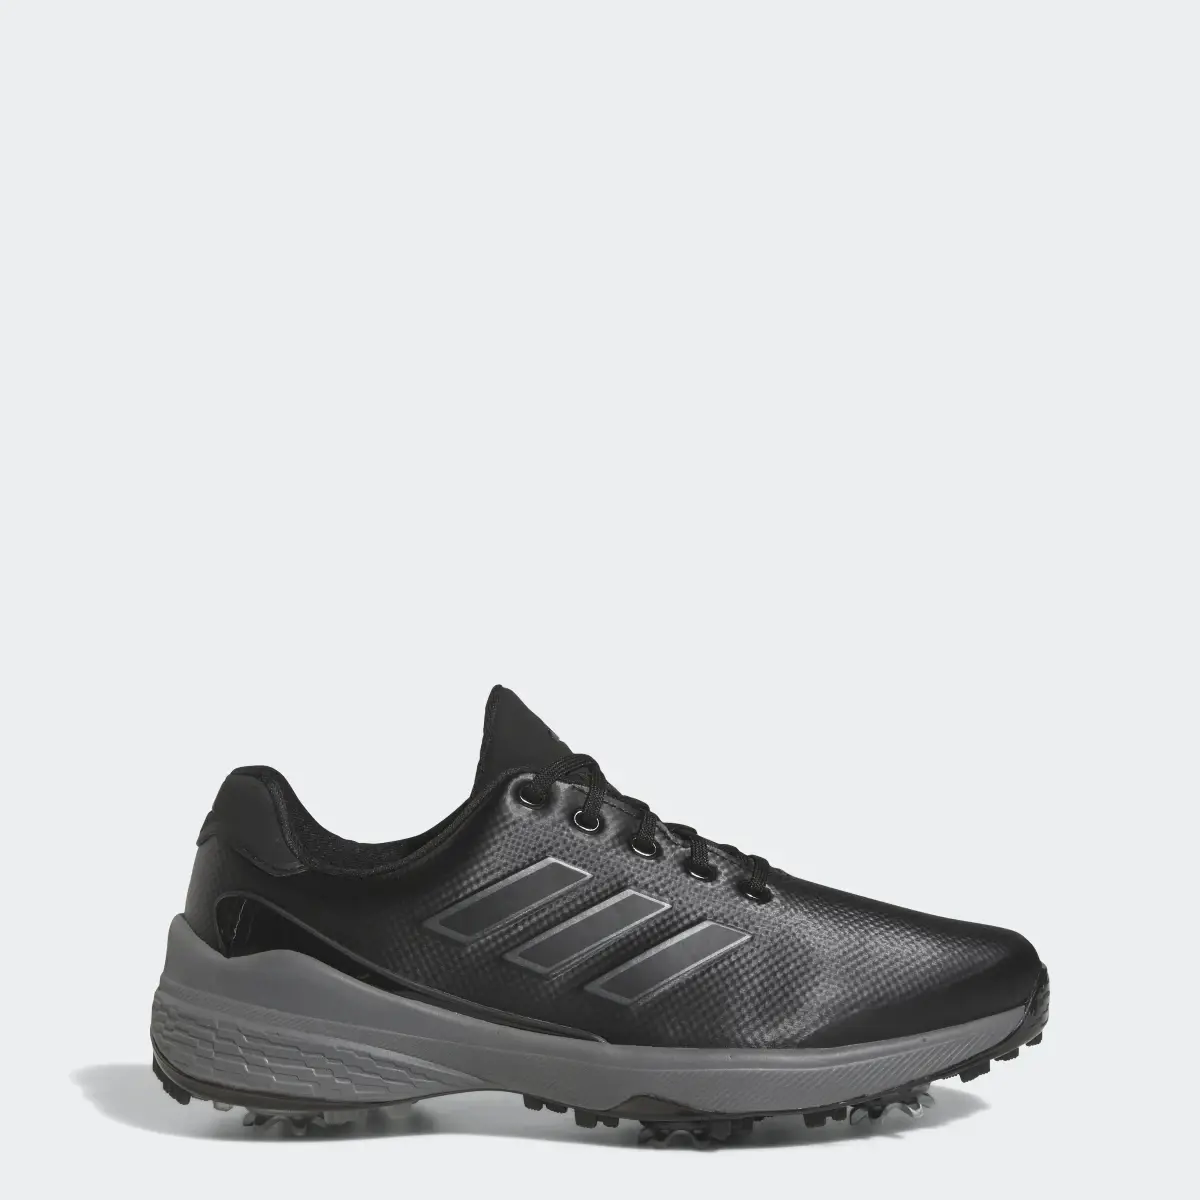 Adidas ZG23 Golf Shoes. 1